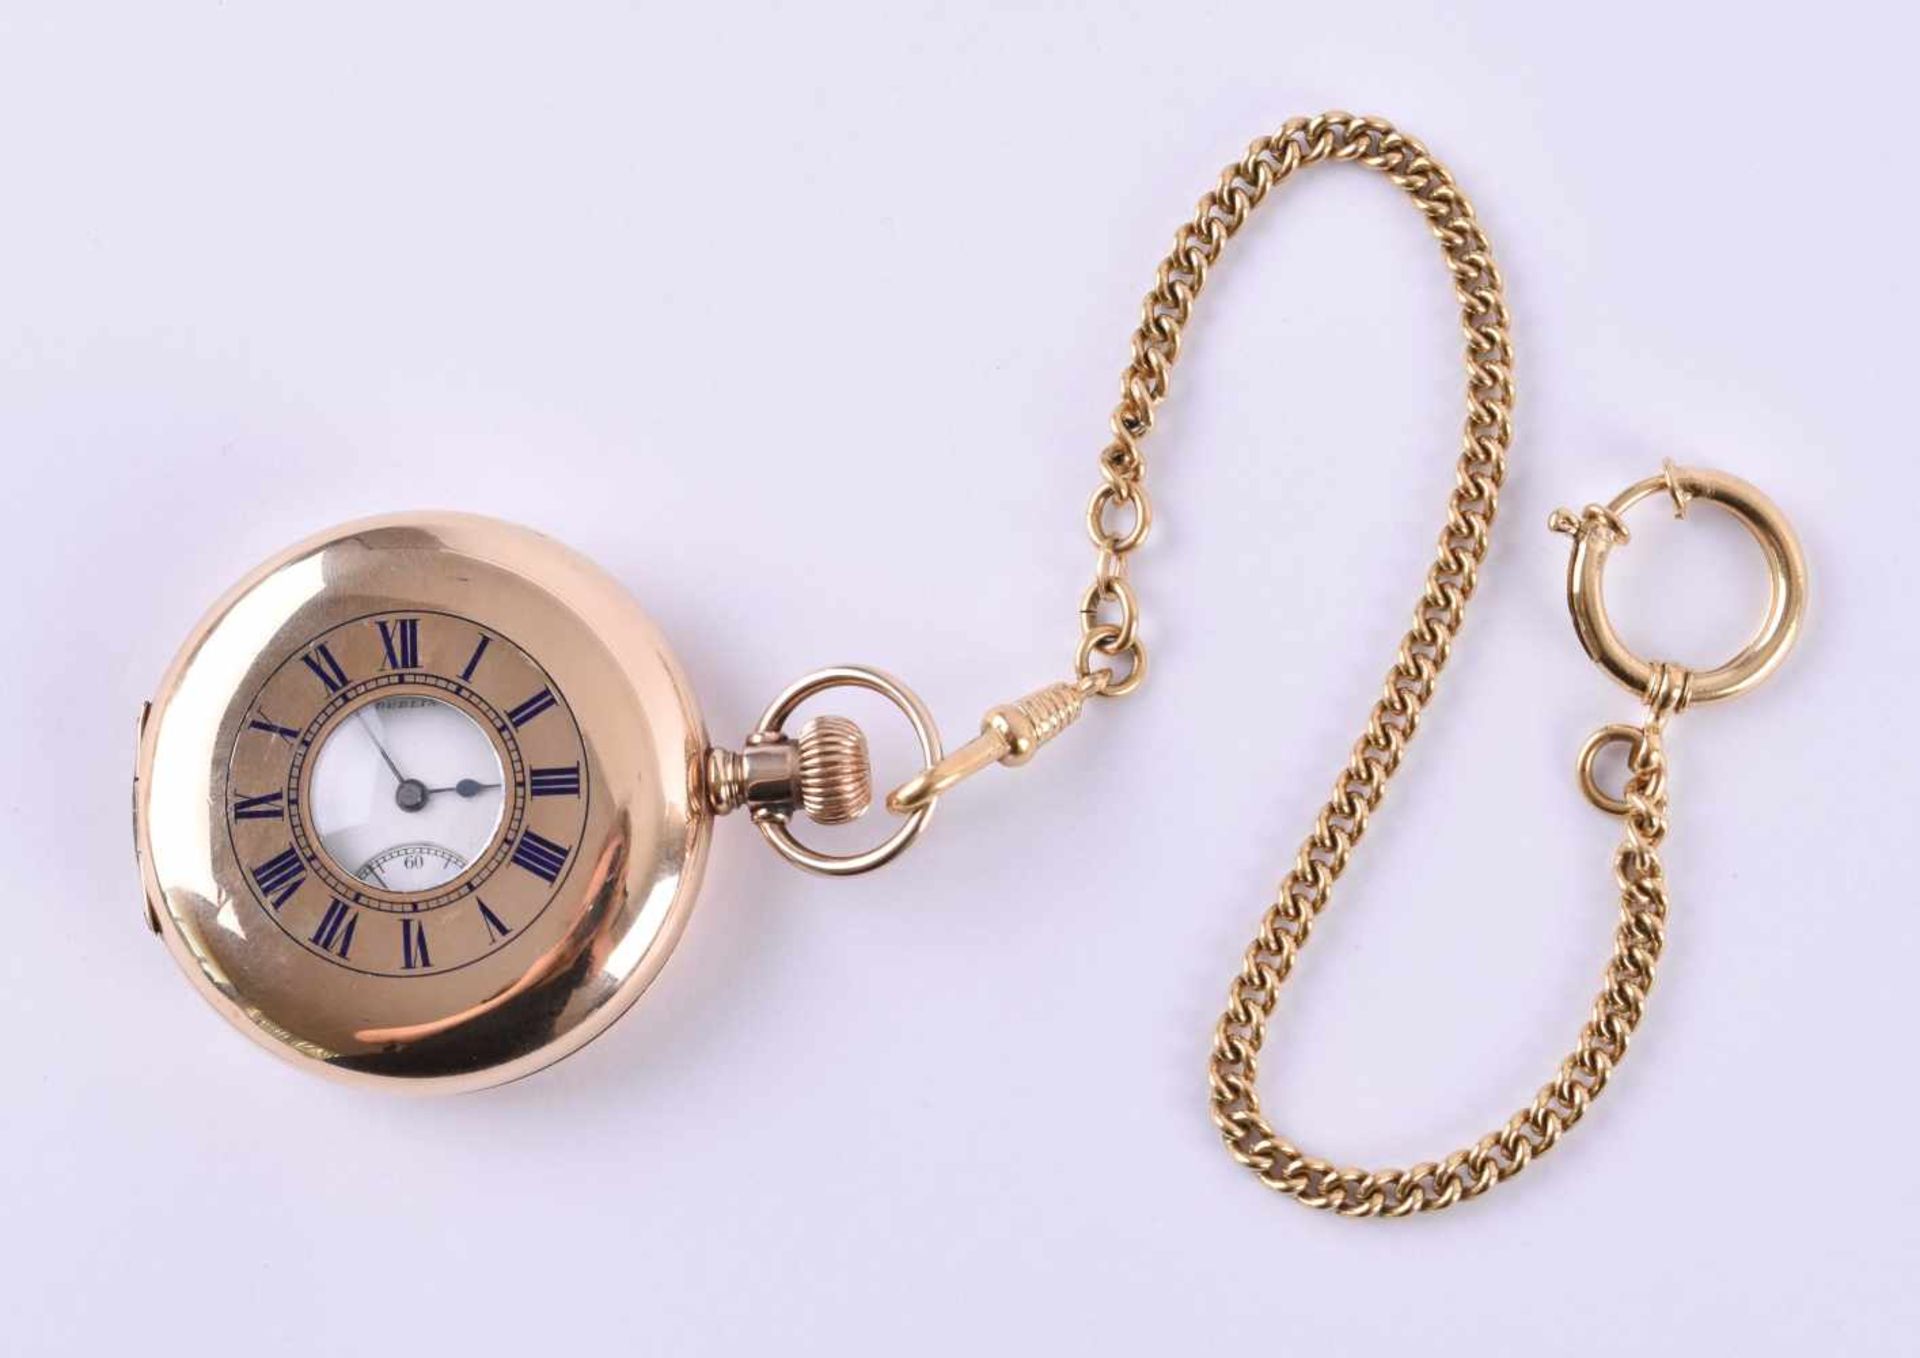 Taschenuhr Elgin National Watch Co. um 1900vergoldetes Gehäuse mit Innendeckel, Werk 17 Steine, - Bild 2 aus 5